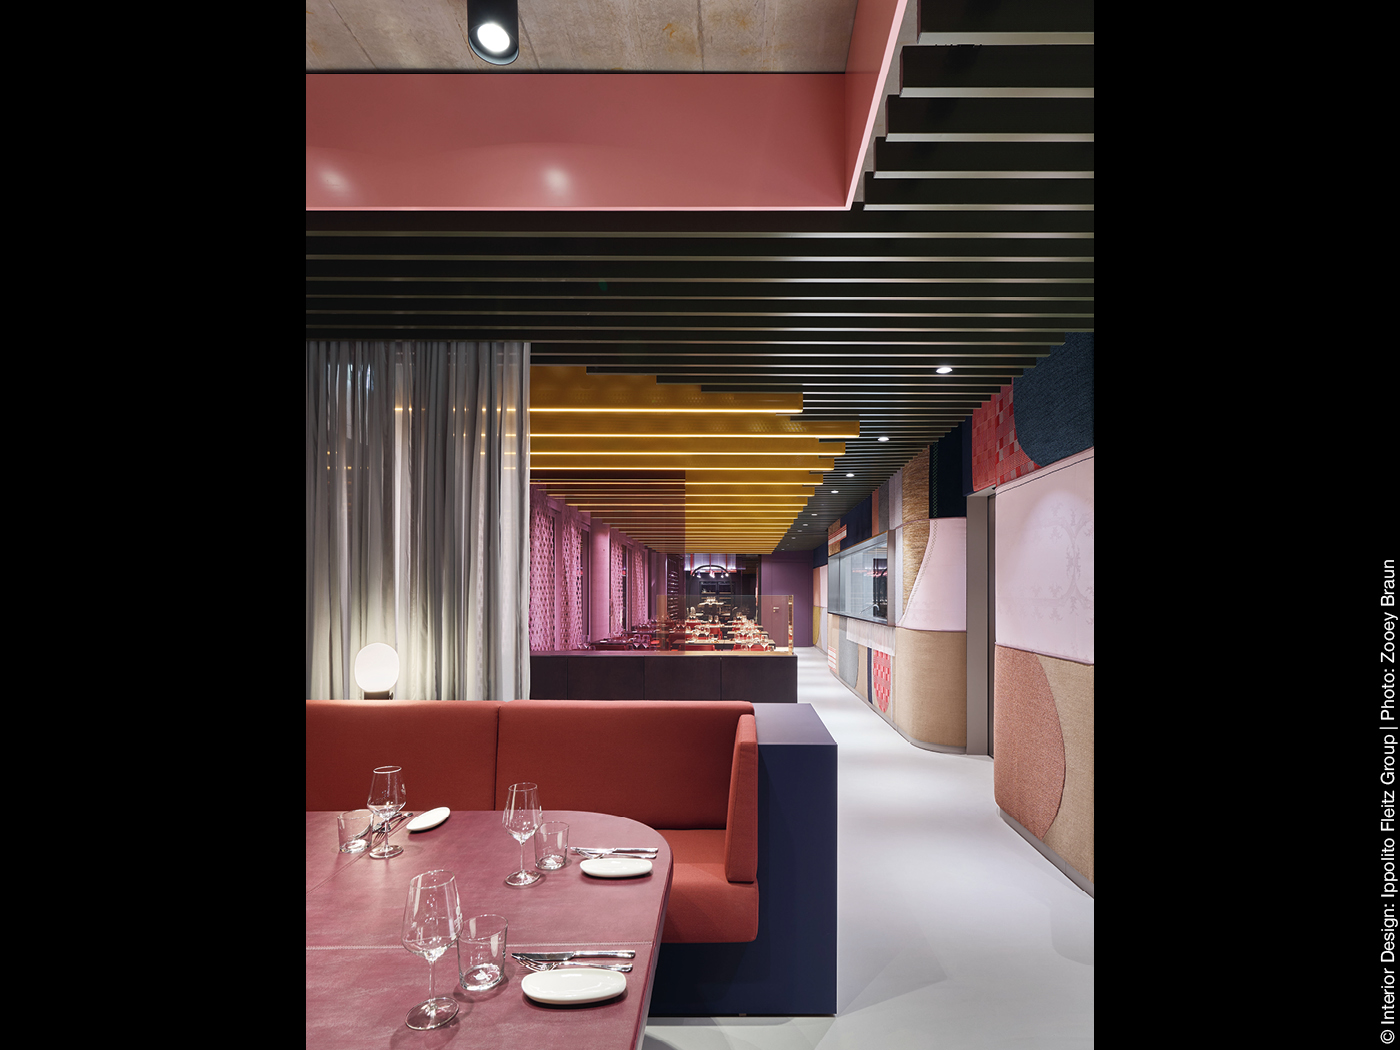 Tisch und Sitzbank in einem Restaurant mit bunter Wandgestaltung